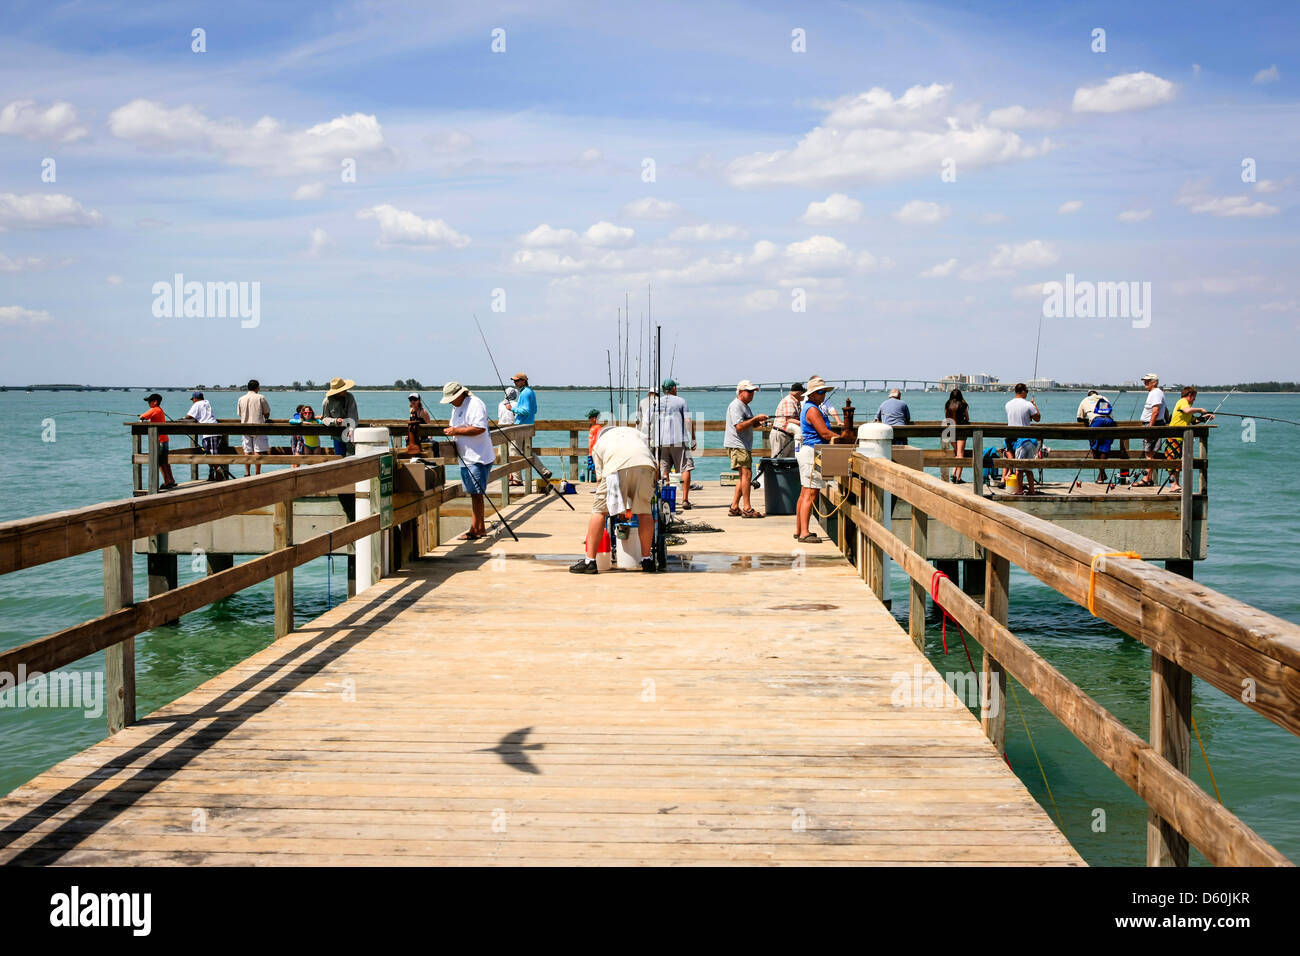 Le quai de pêche sur l'île de Sanibel Floride populaire auprès de tous les âges Banque D'Images